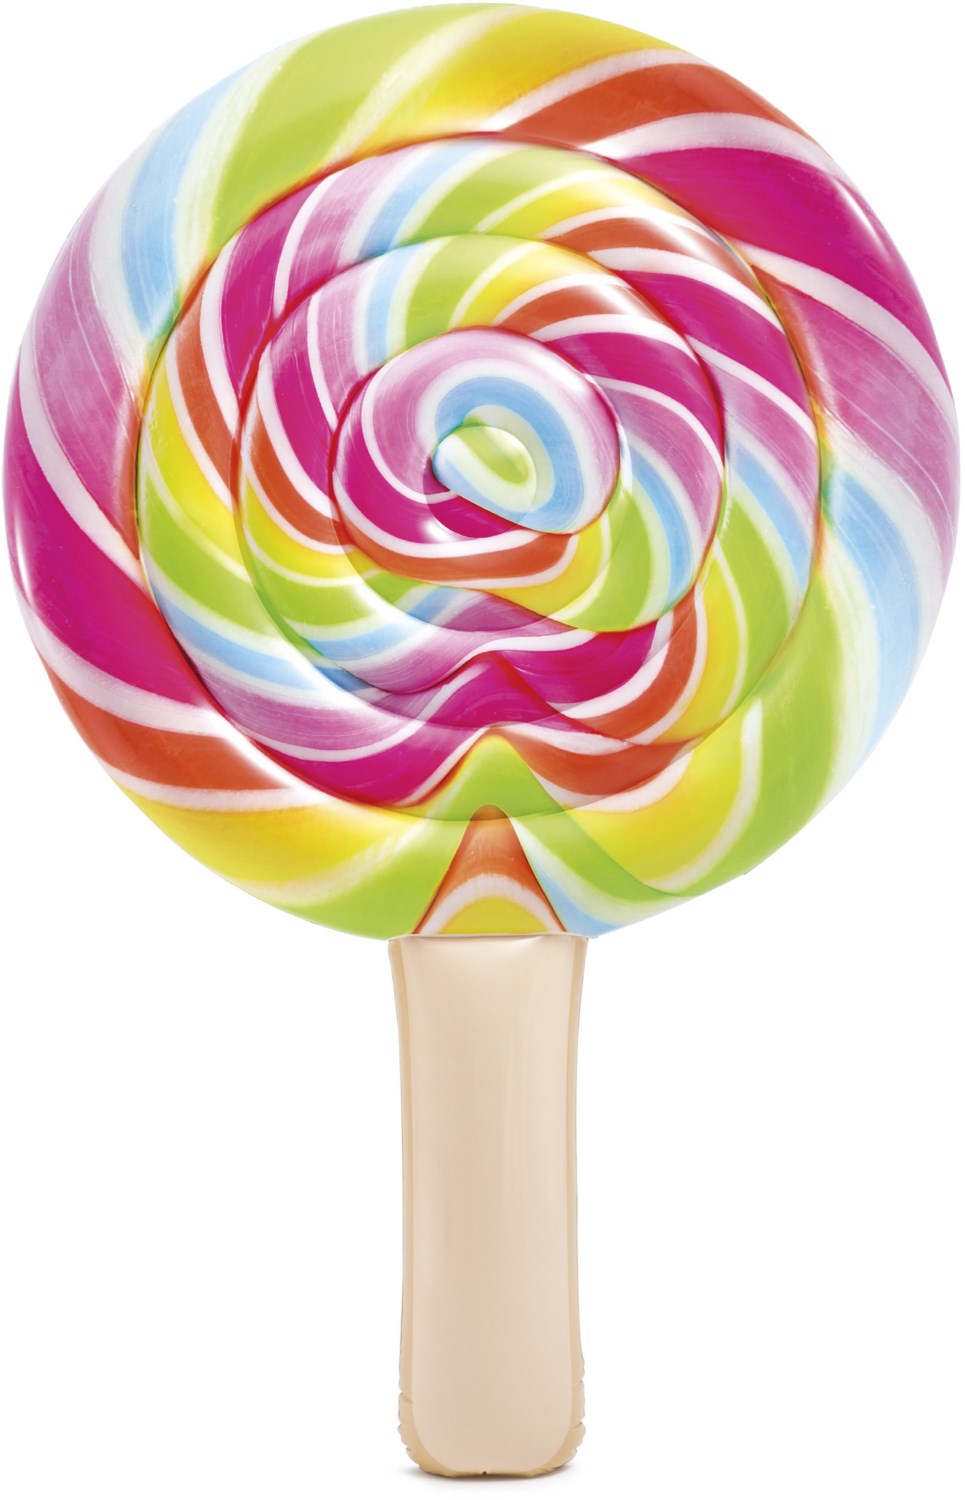 Luftmatratze Lollipop